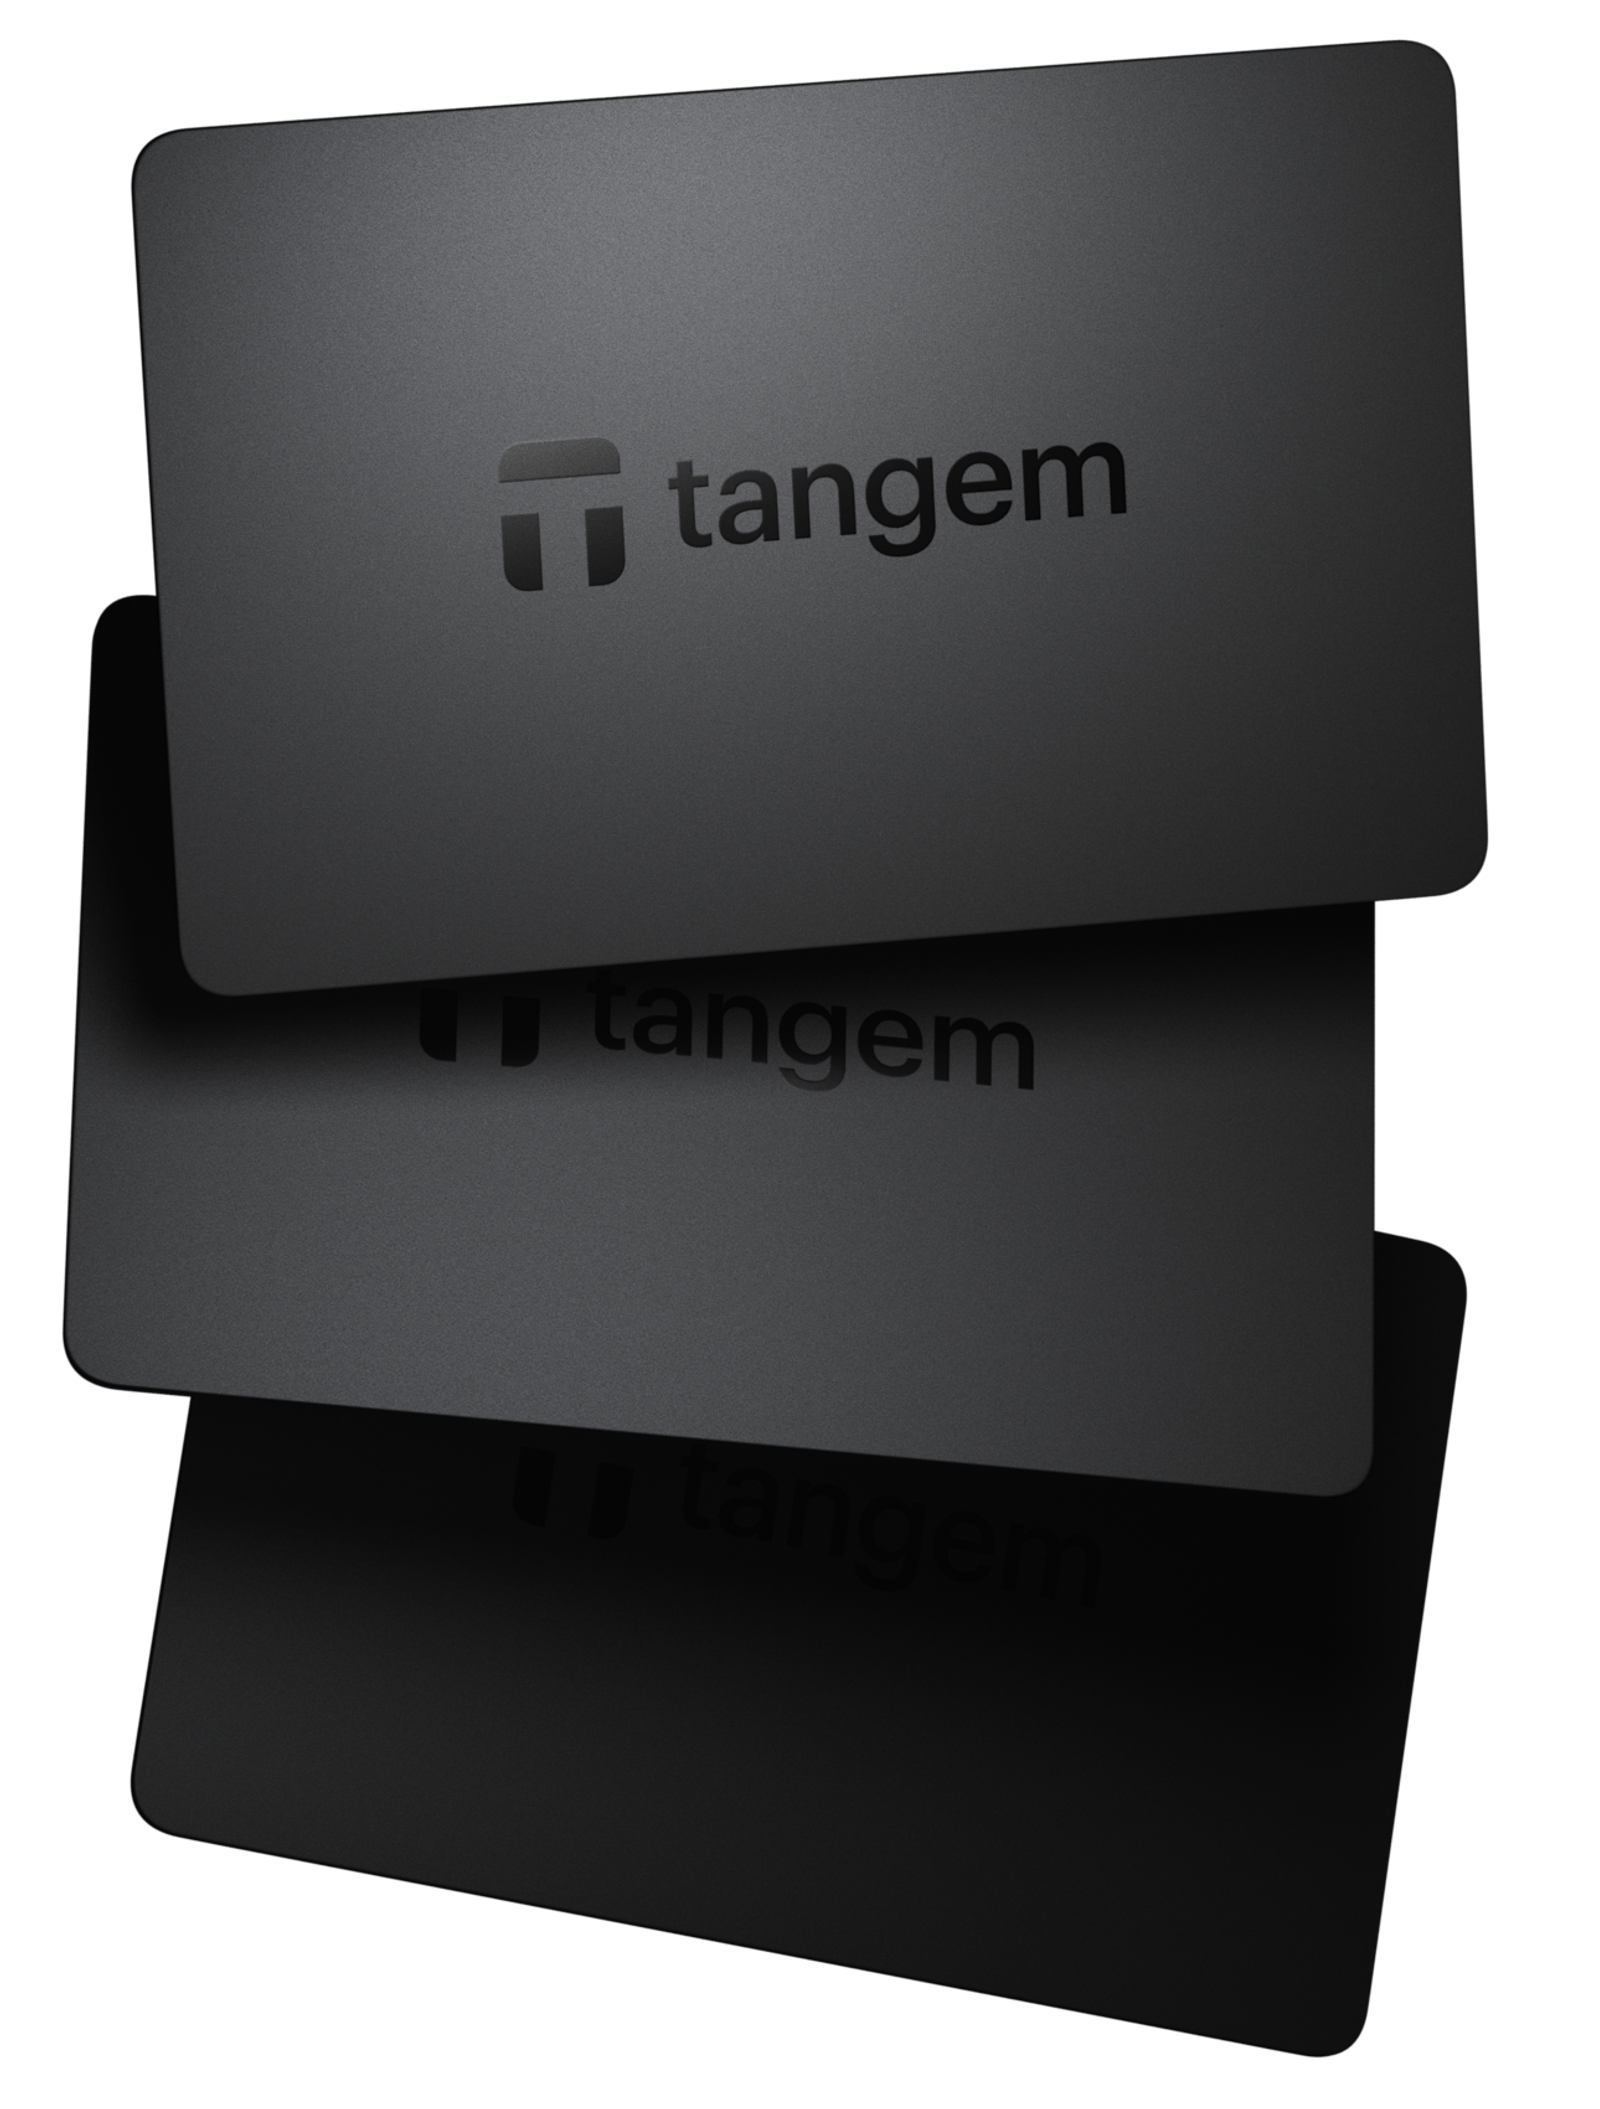 Tangem Wallet V2 - Discover the new version!